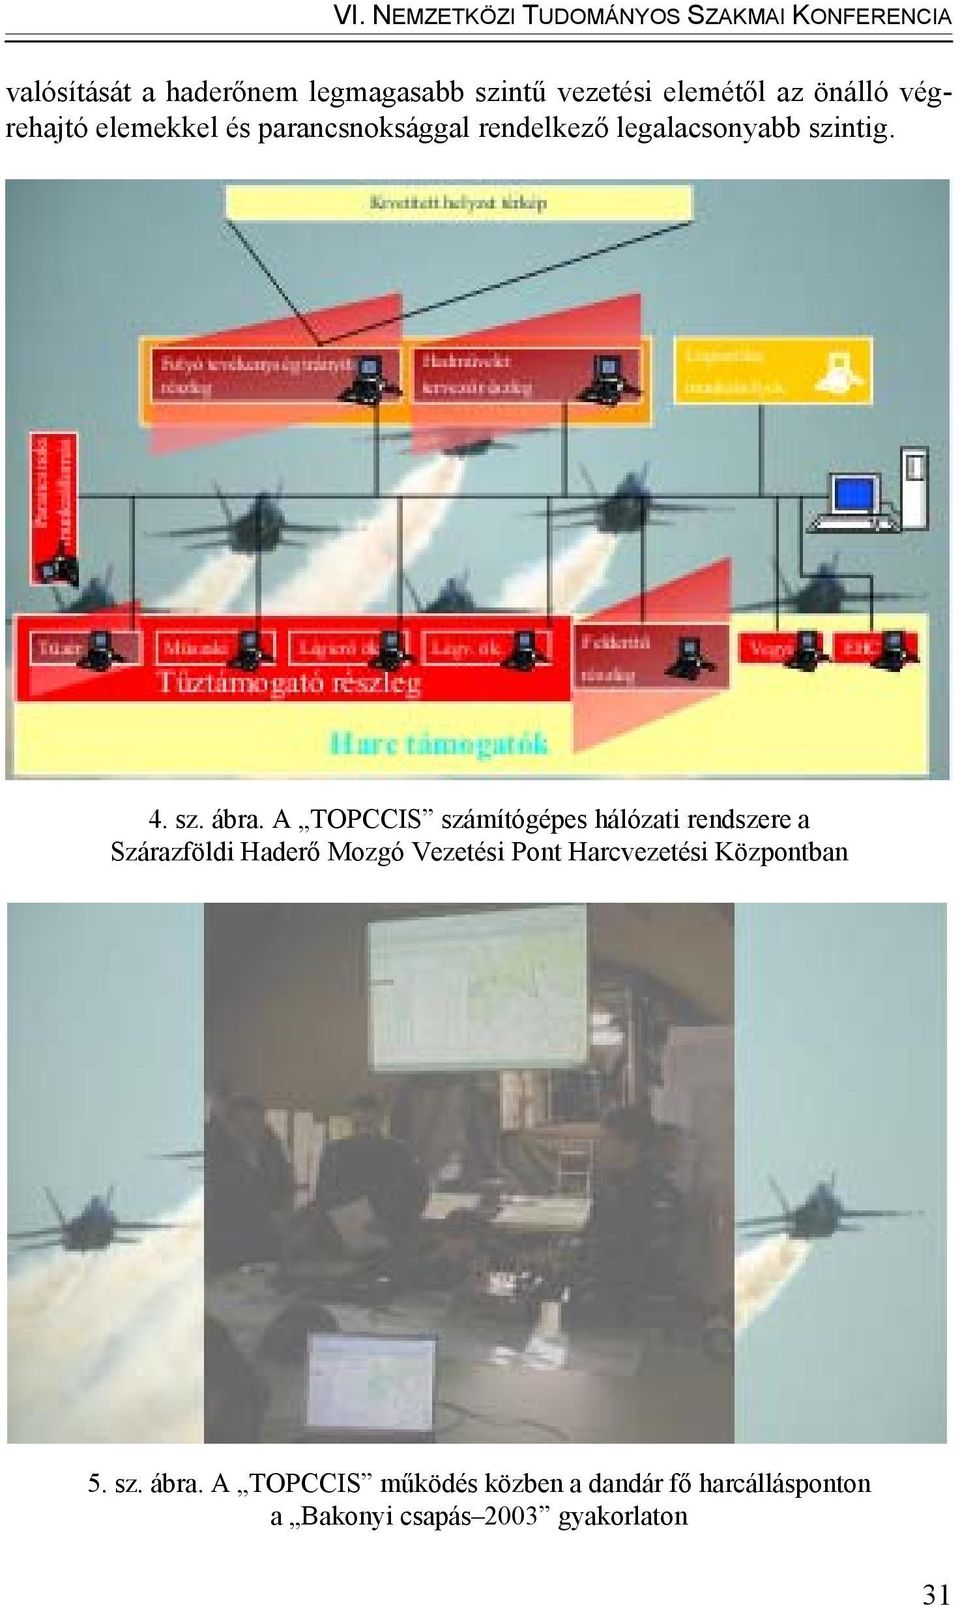 A TOPCCIS számítógépes hálózati rendszere a Szárazföldi Haderő Mozgó Vezetési Pont Harcvezetési